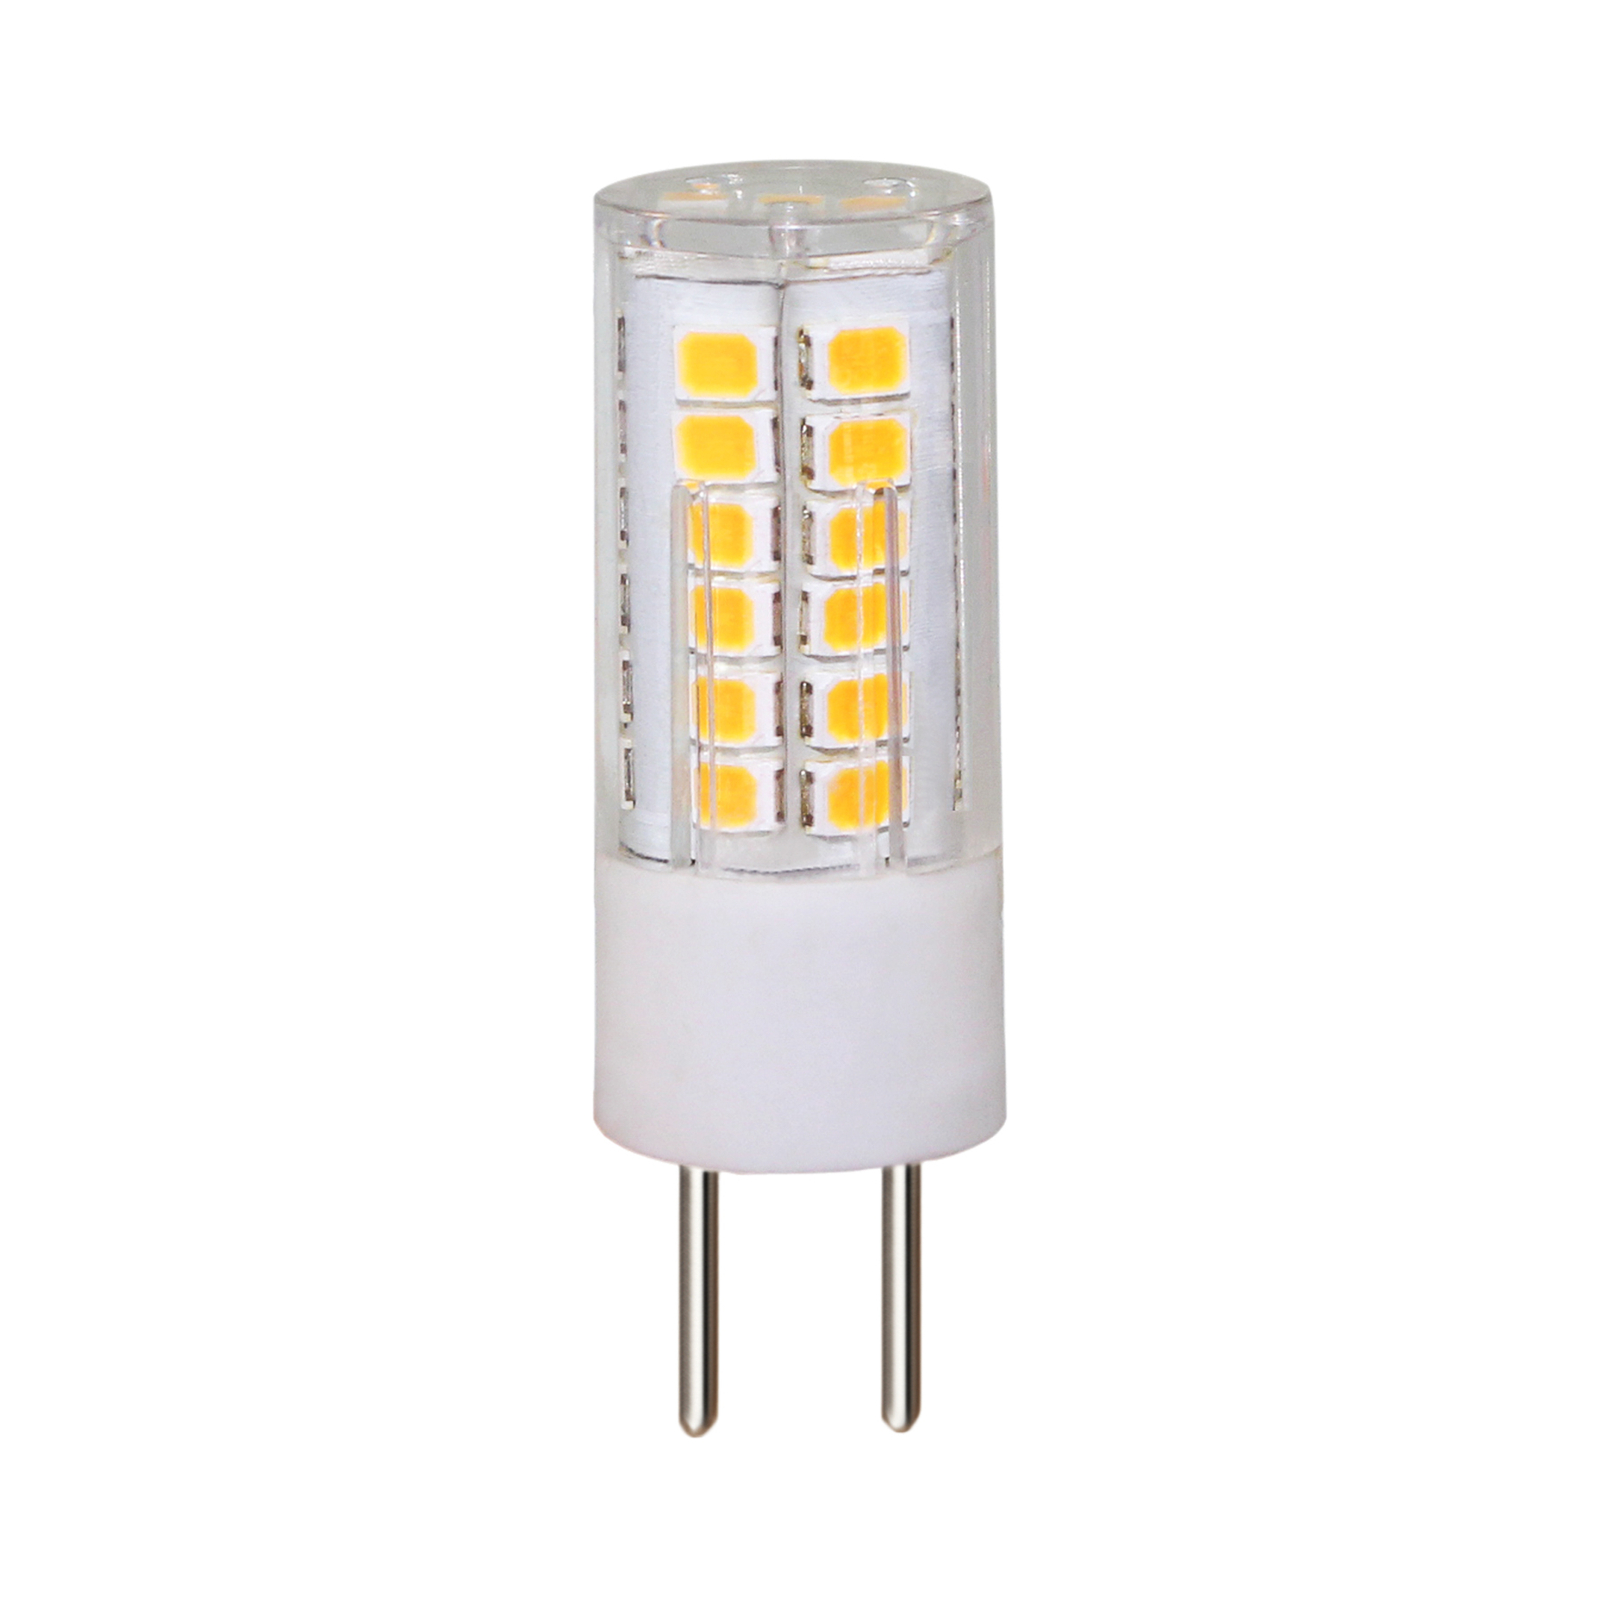 Arcchio bi-pin LED bulb G4 3.4 W 2,700 K